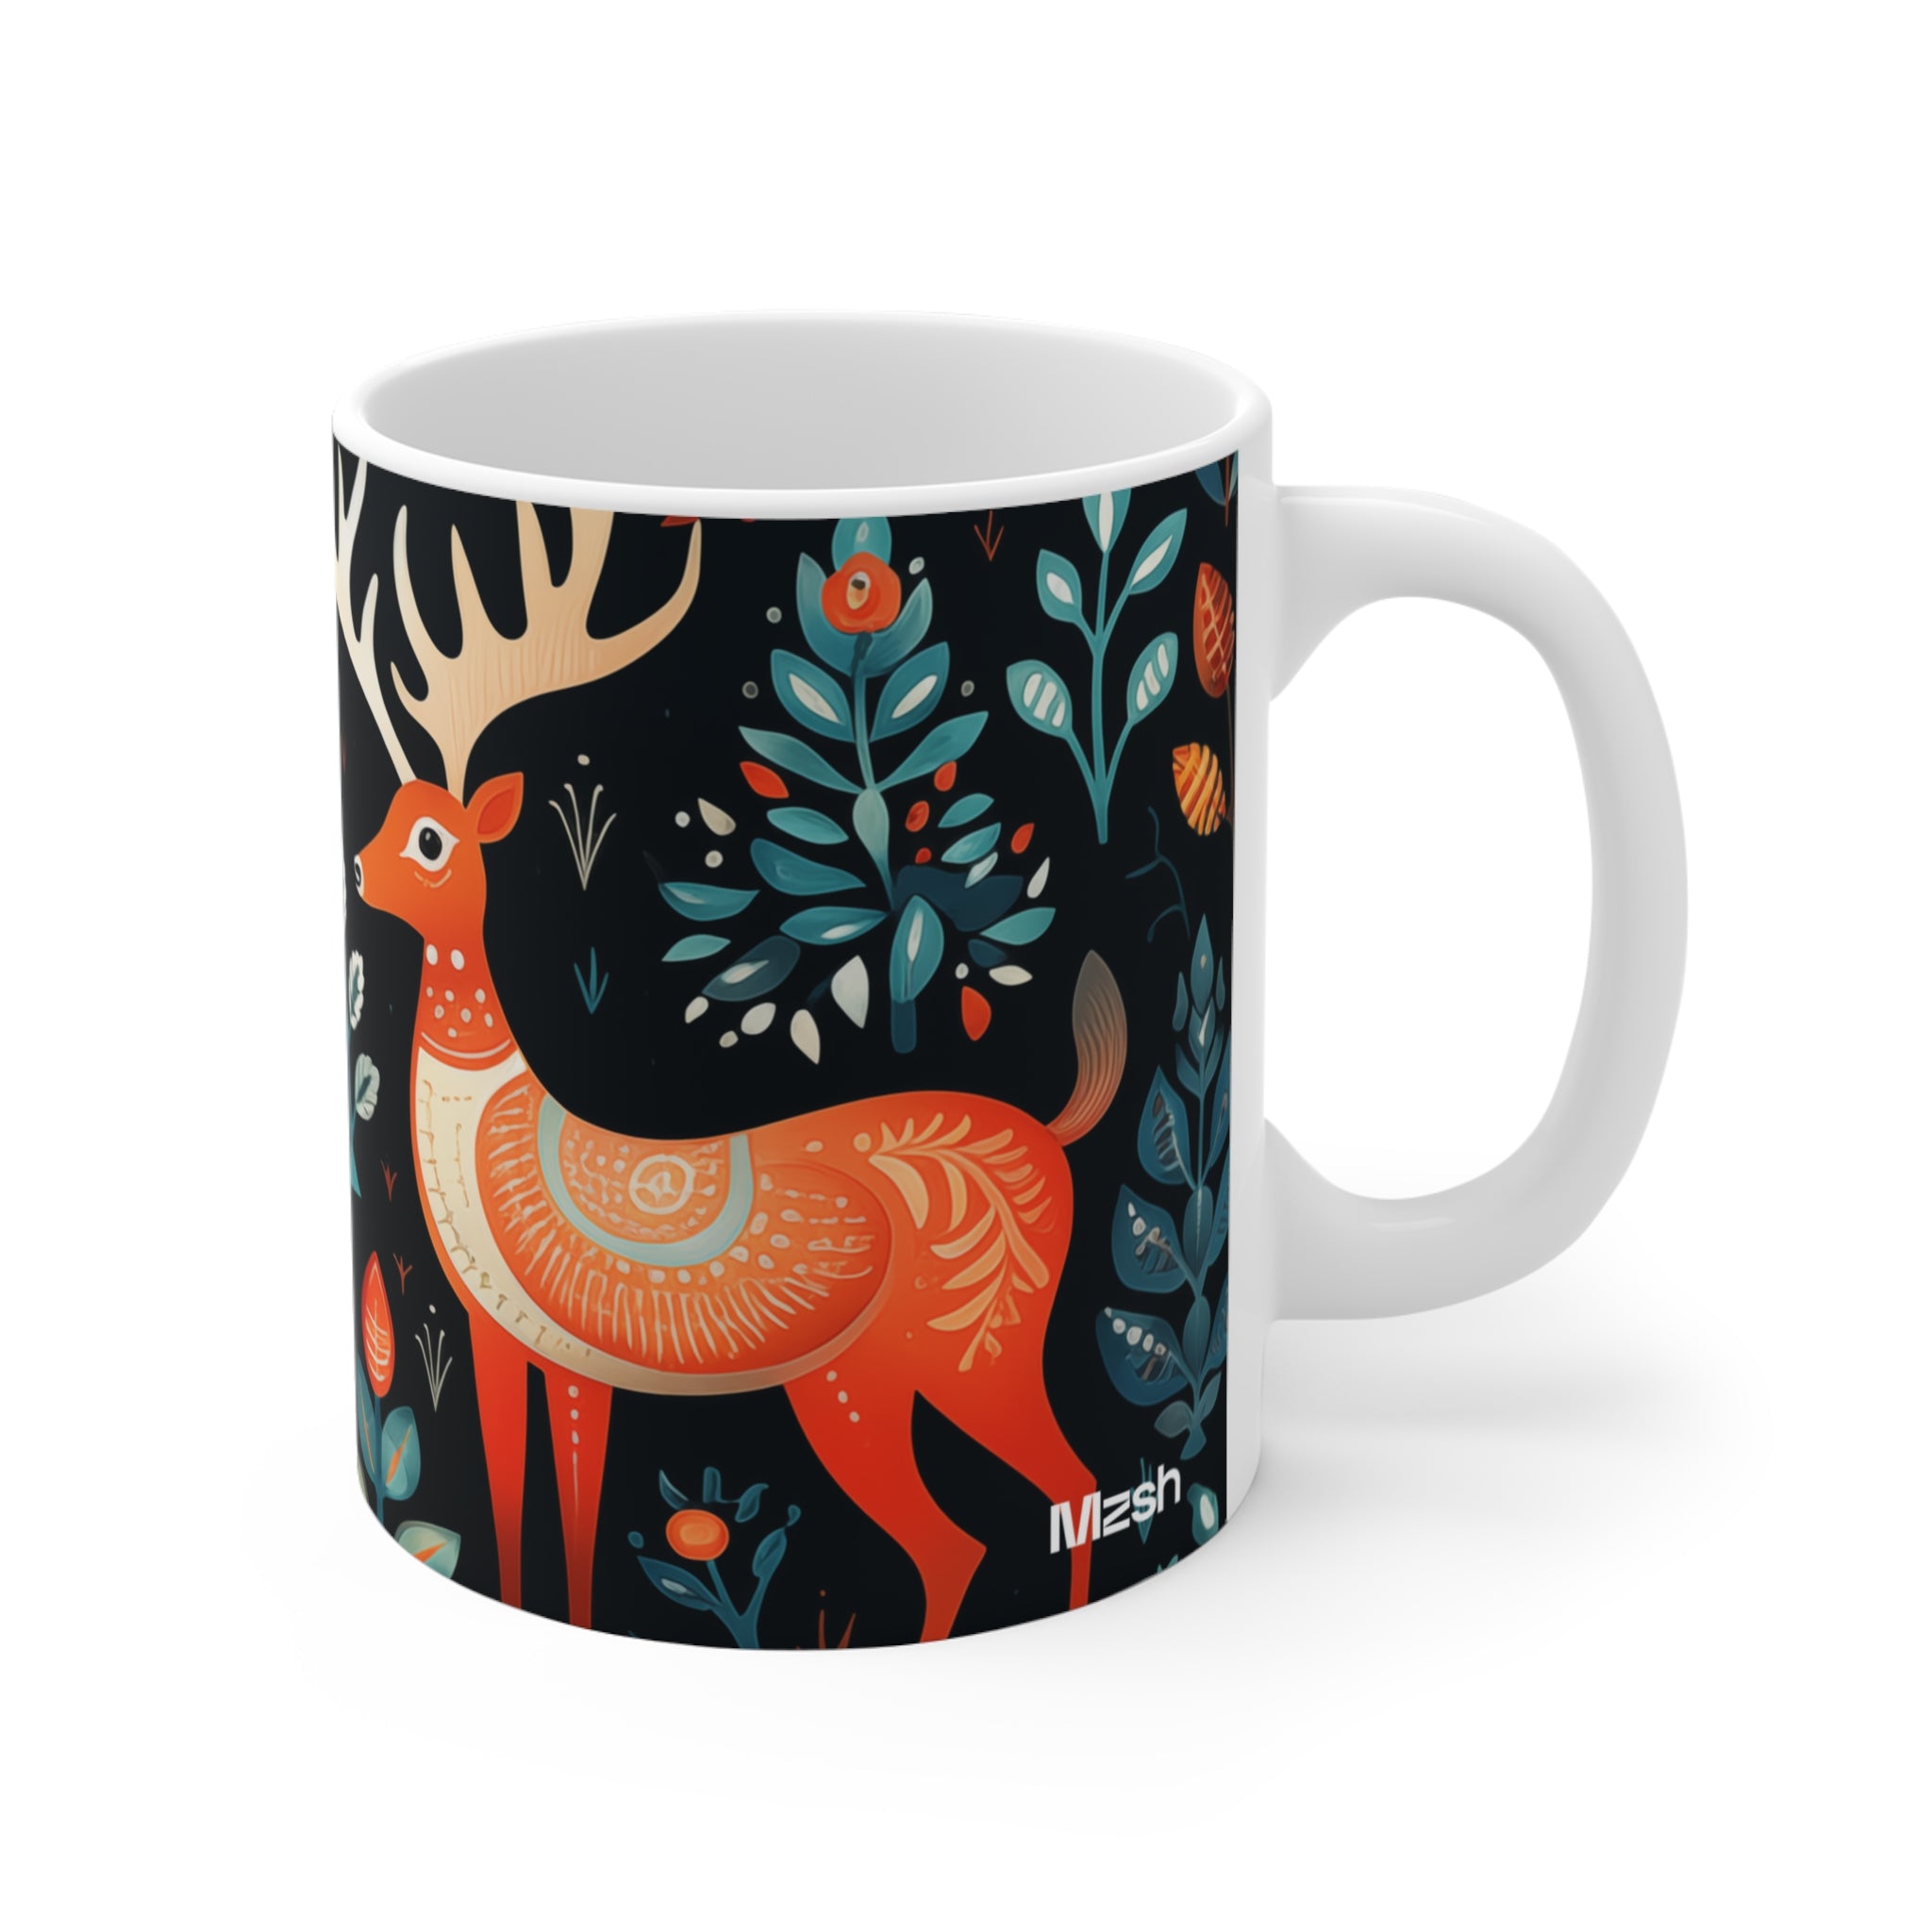 Reindeer Rhythms - Mugs